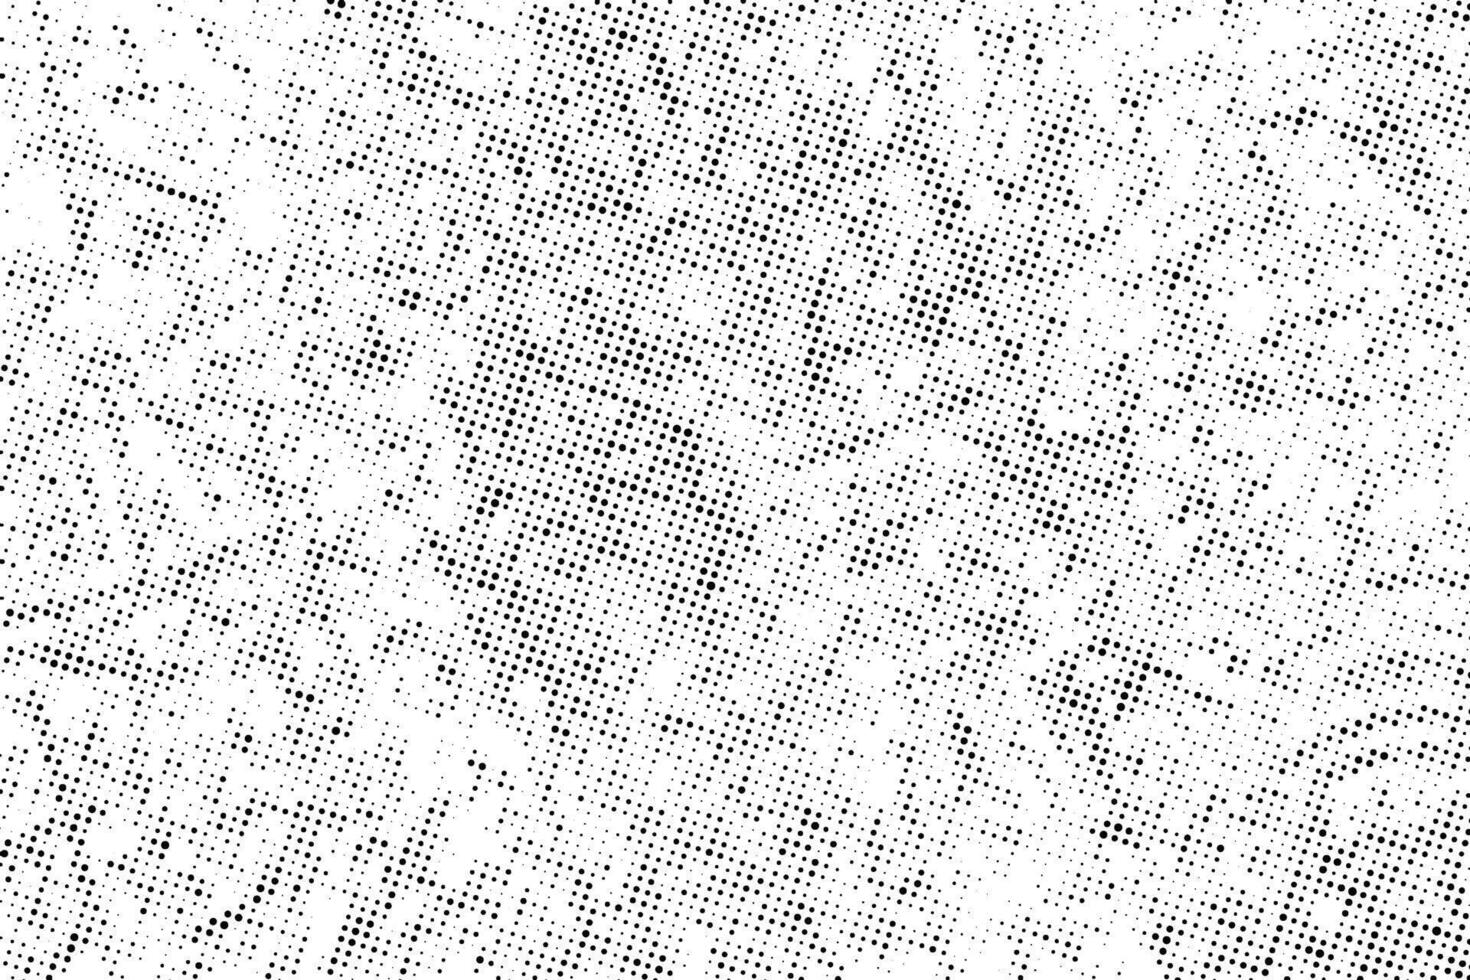 ein schwarz und Weiß Bild von ein Textur, ein schwarz und Weiß Halbton Muster mit Punkte, abstrakt Halbton Punkt Vektor